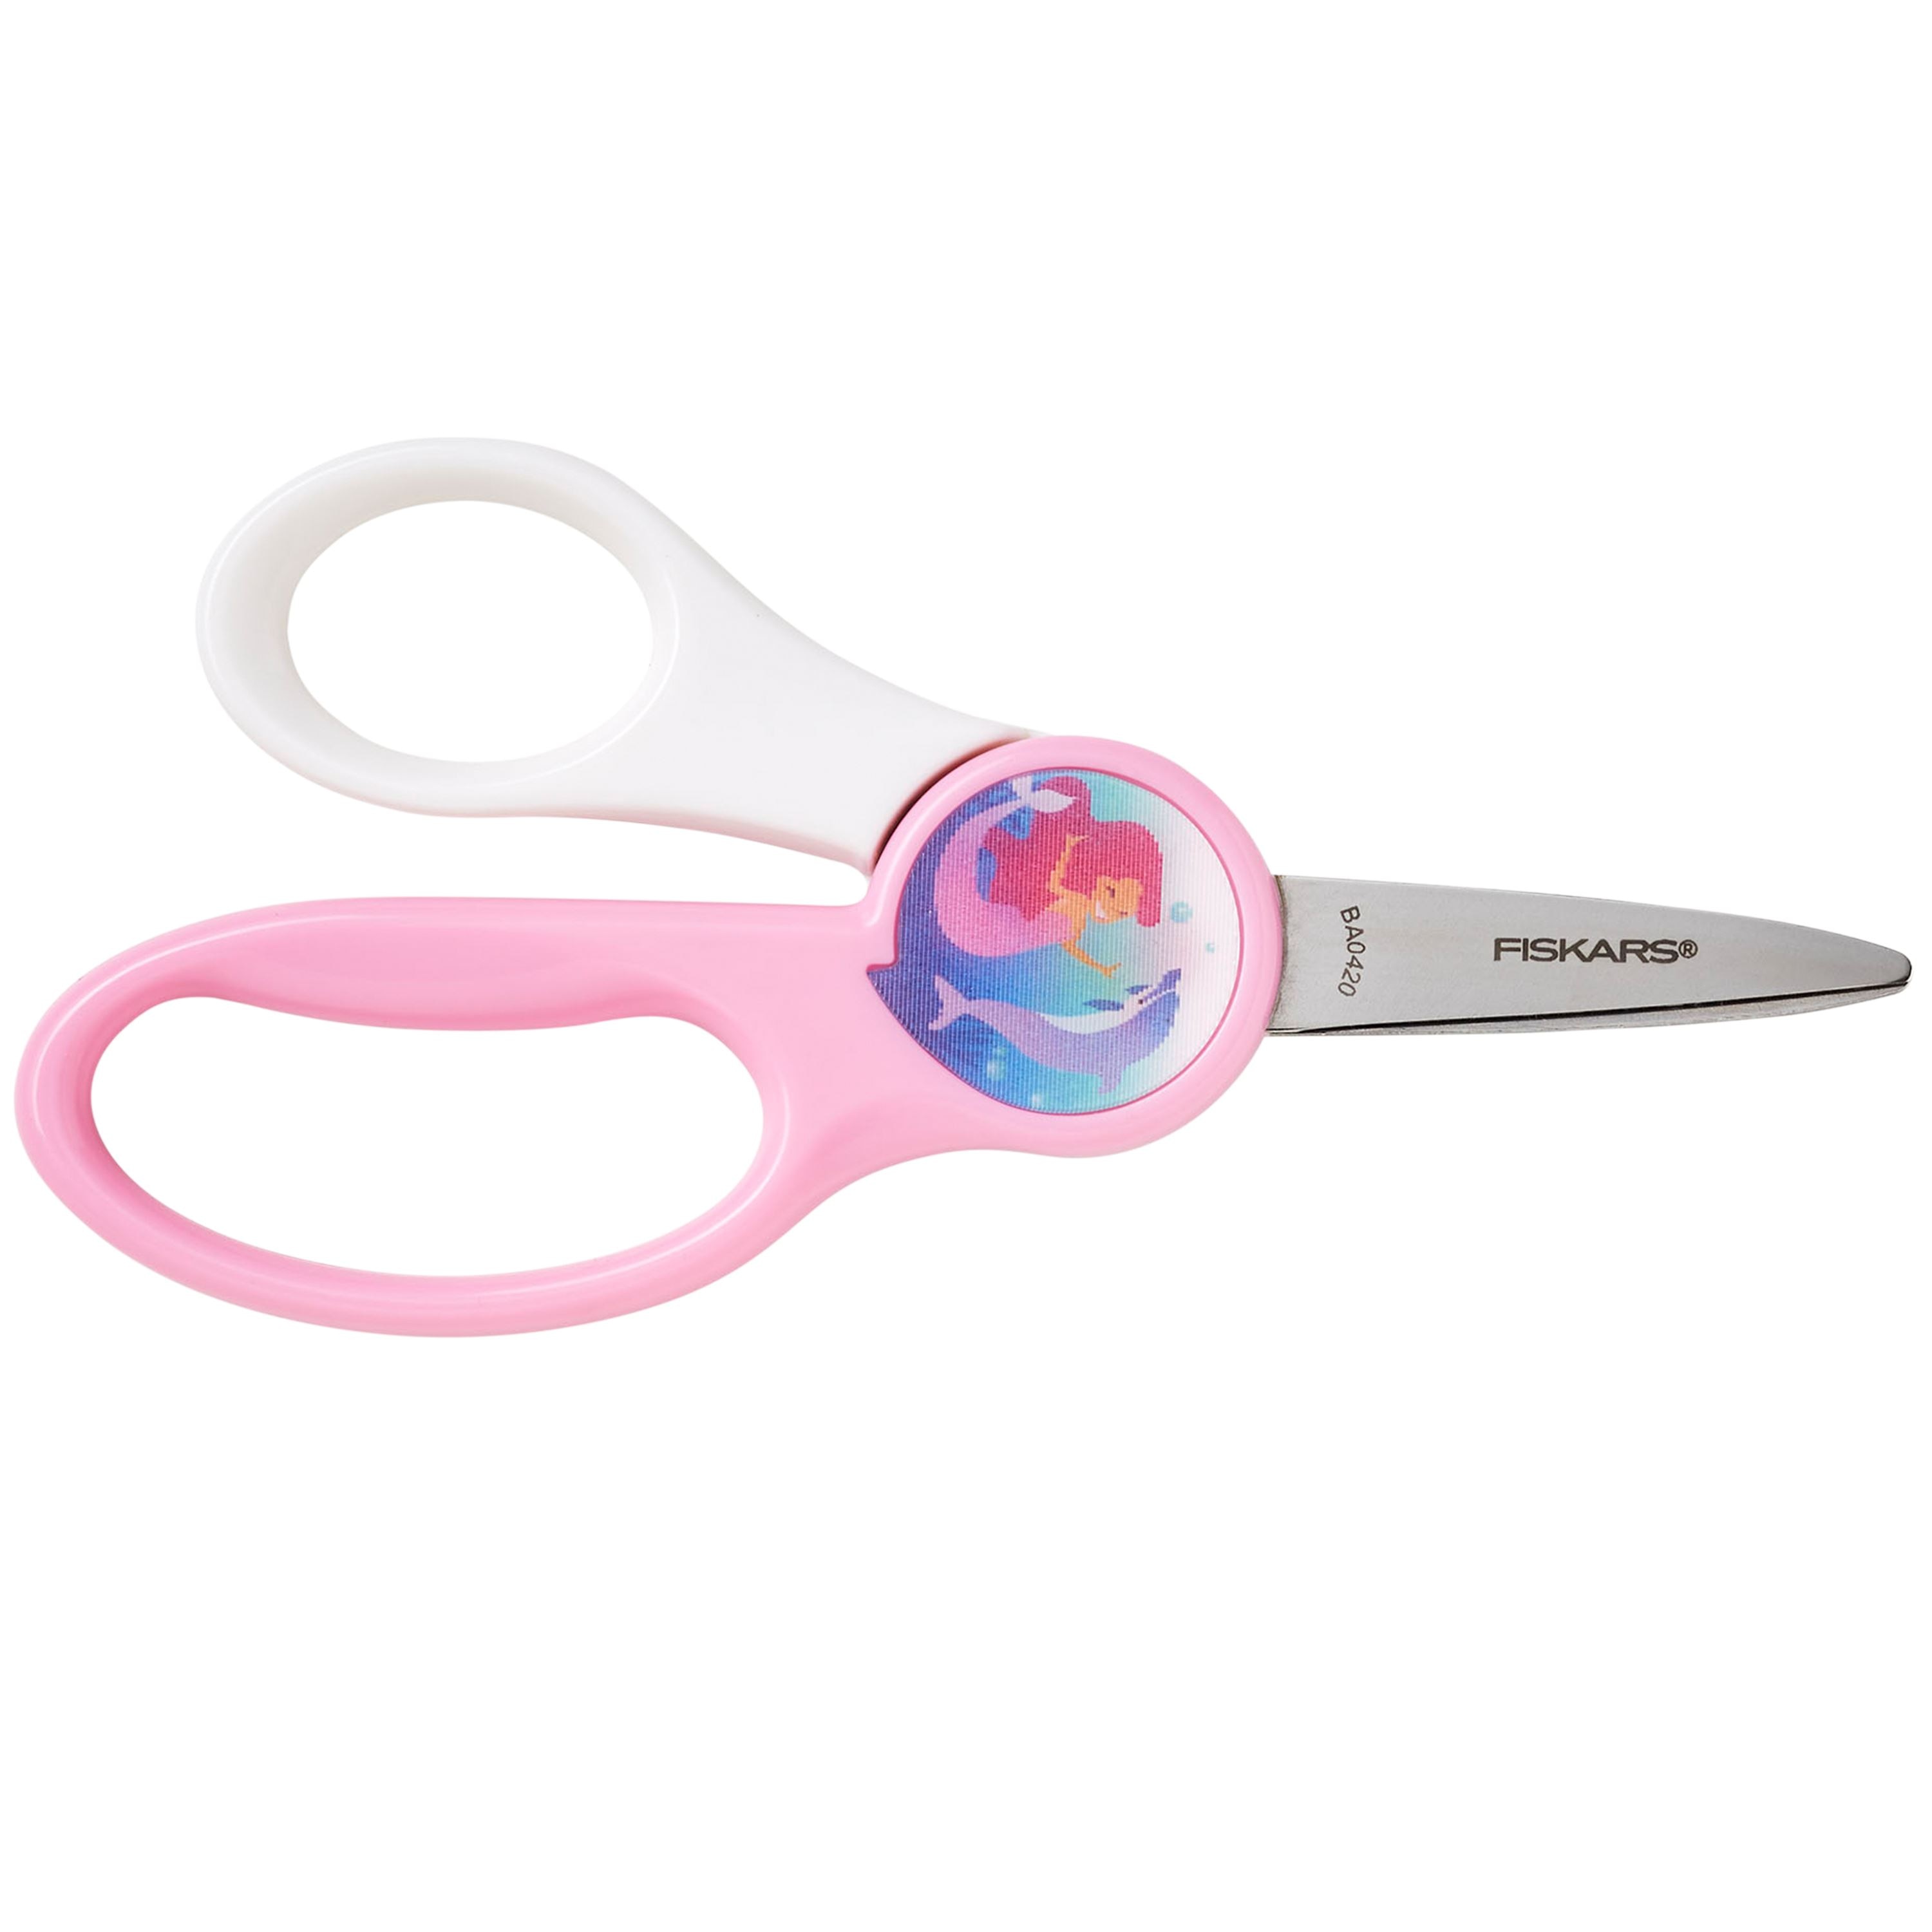 Fiskars Pointed-tip Kids Scissors (5 in.) - Pink 